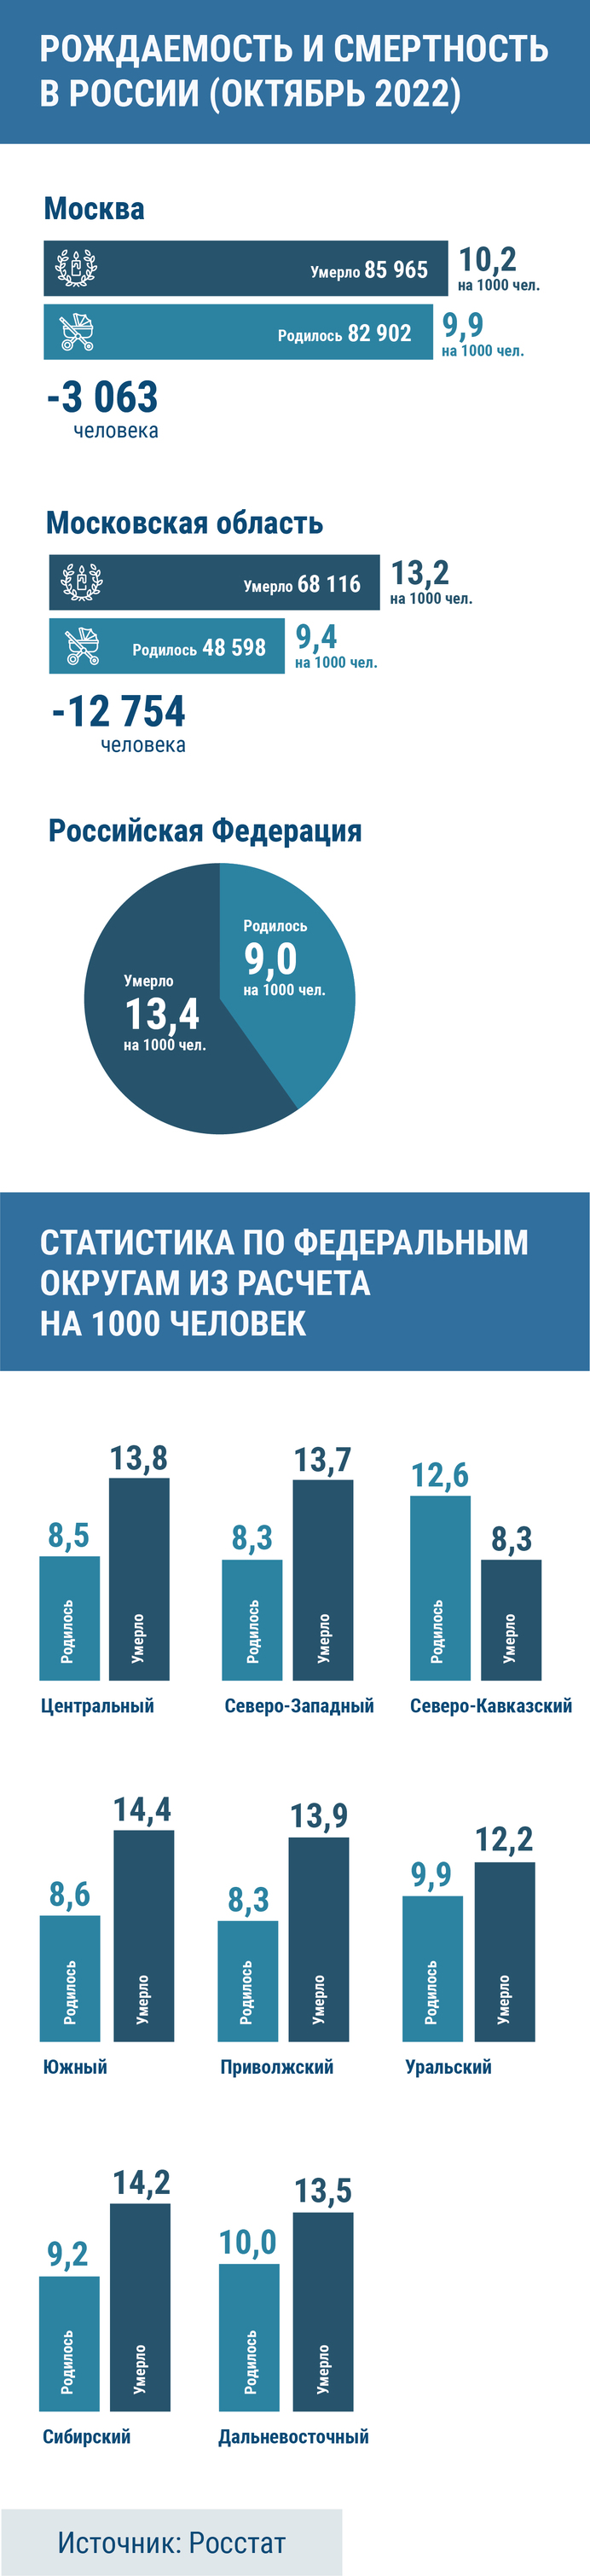 Смертность в России в 2022 году, инфографика, источник: росстат